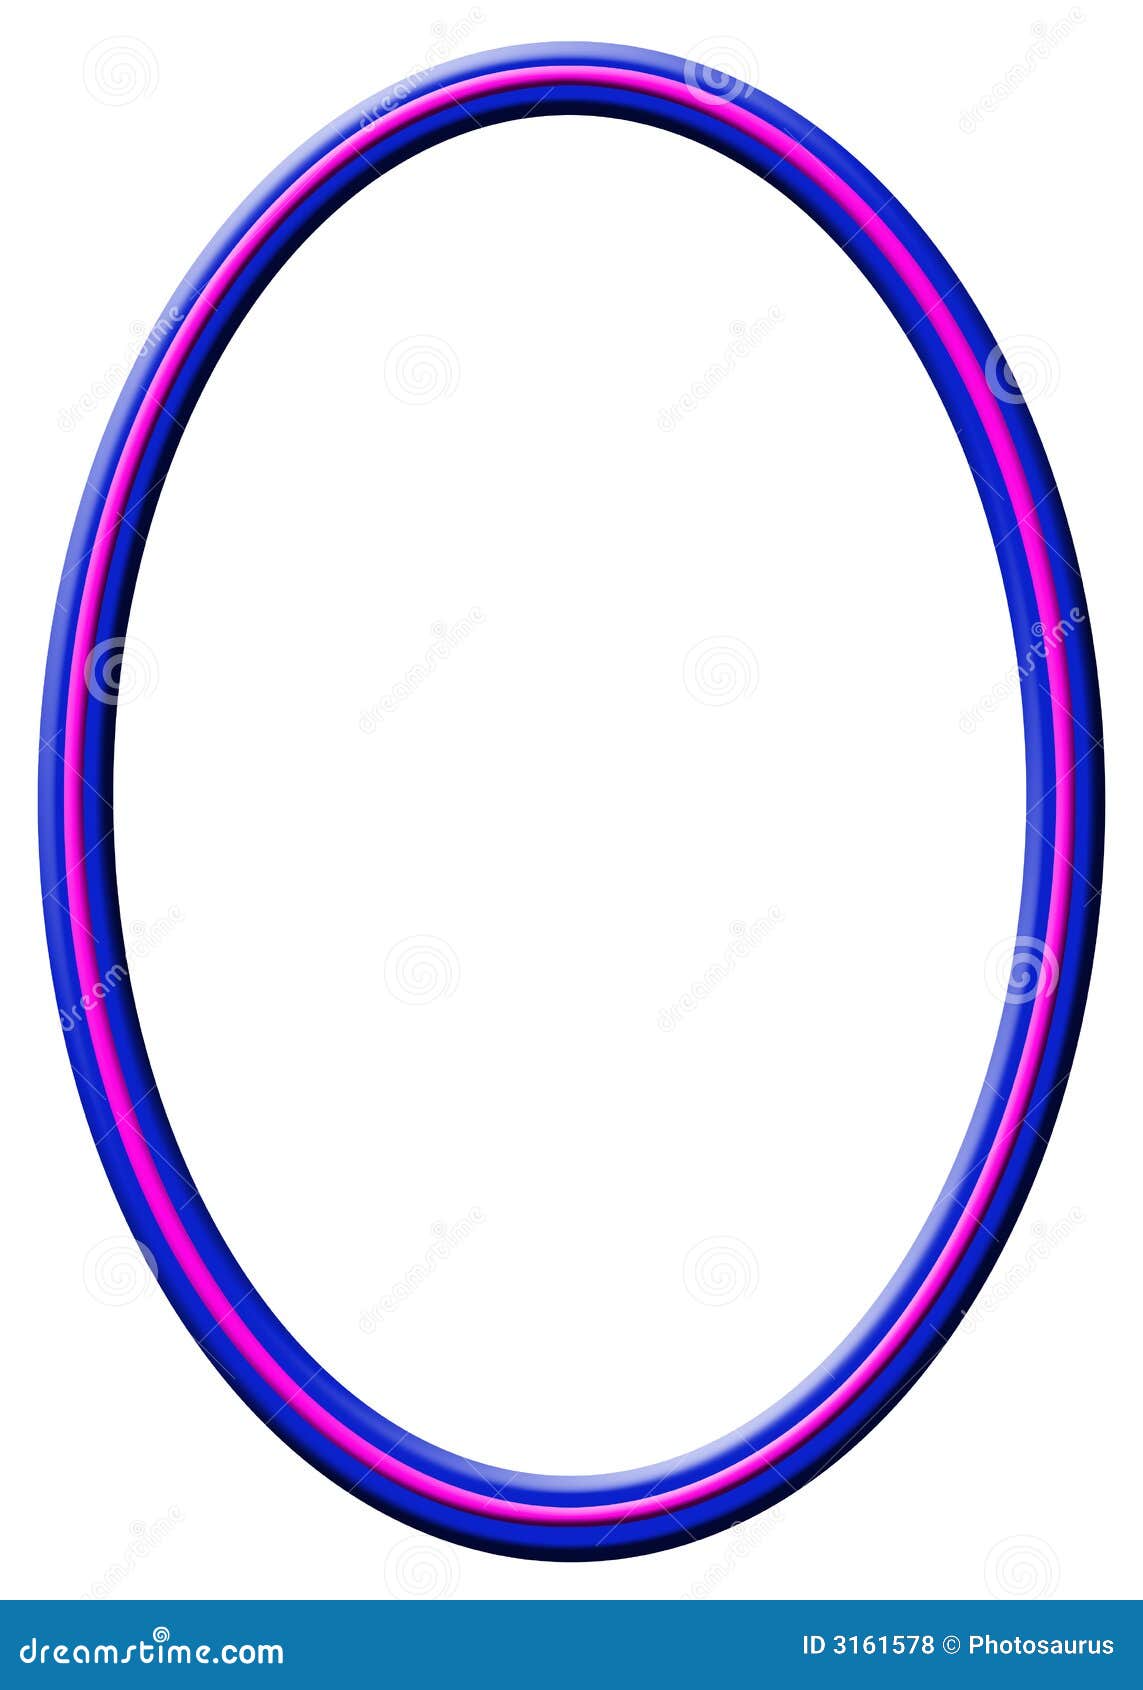 blue-pink oval frame